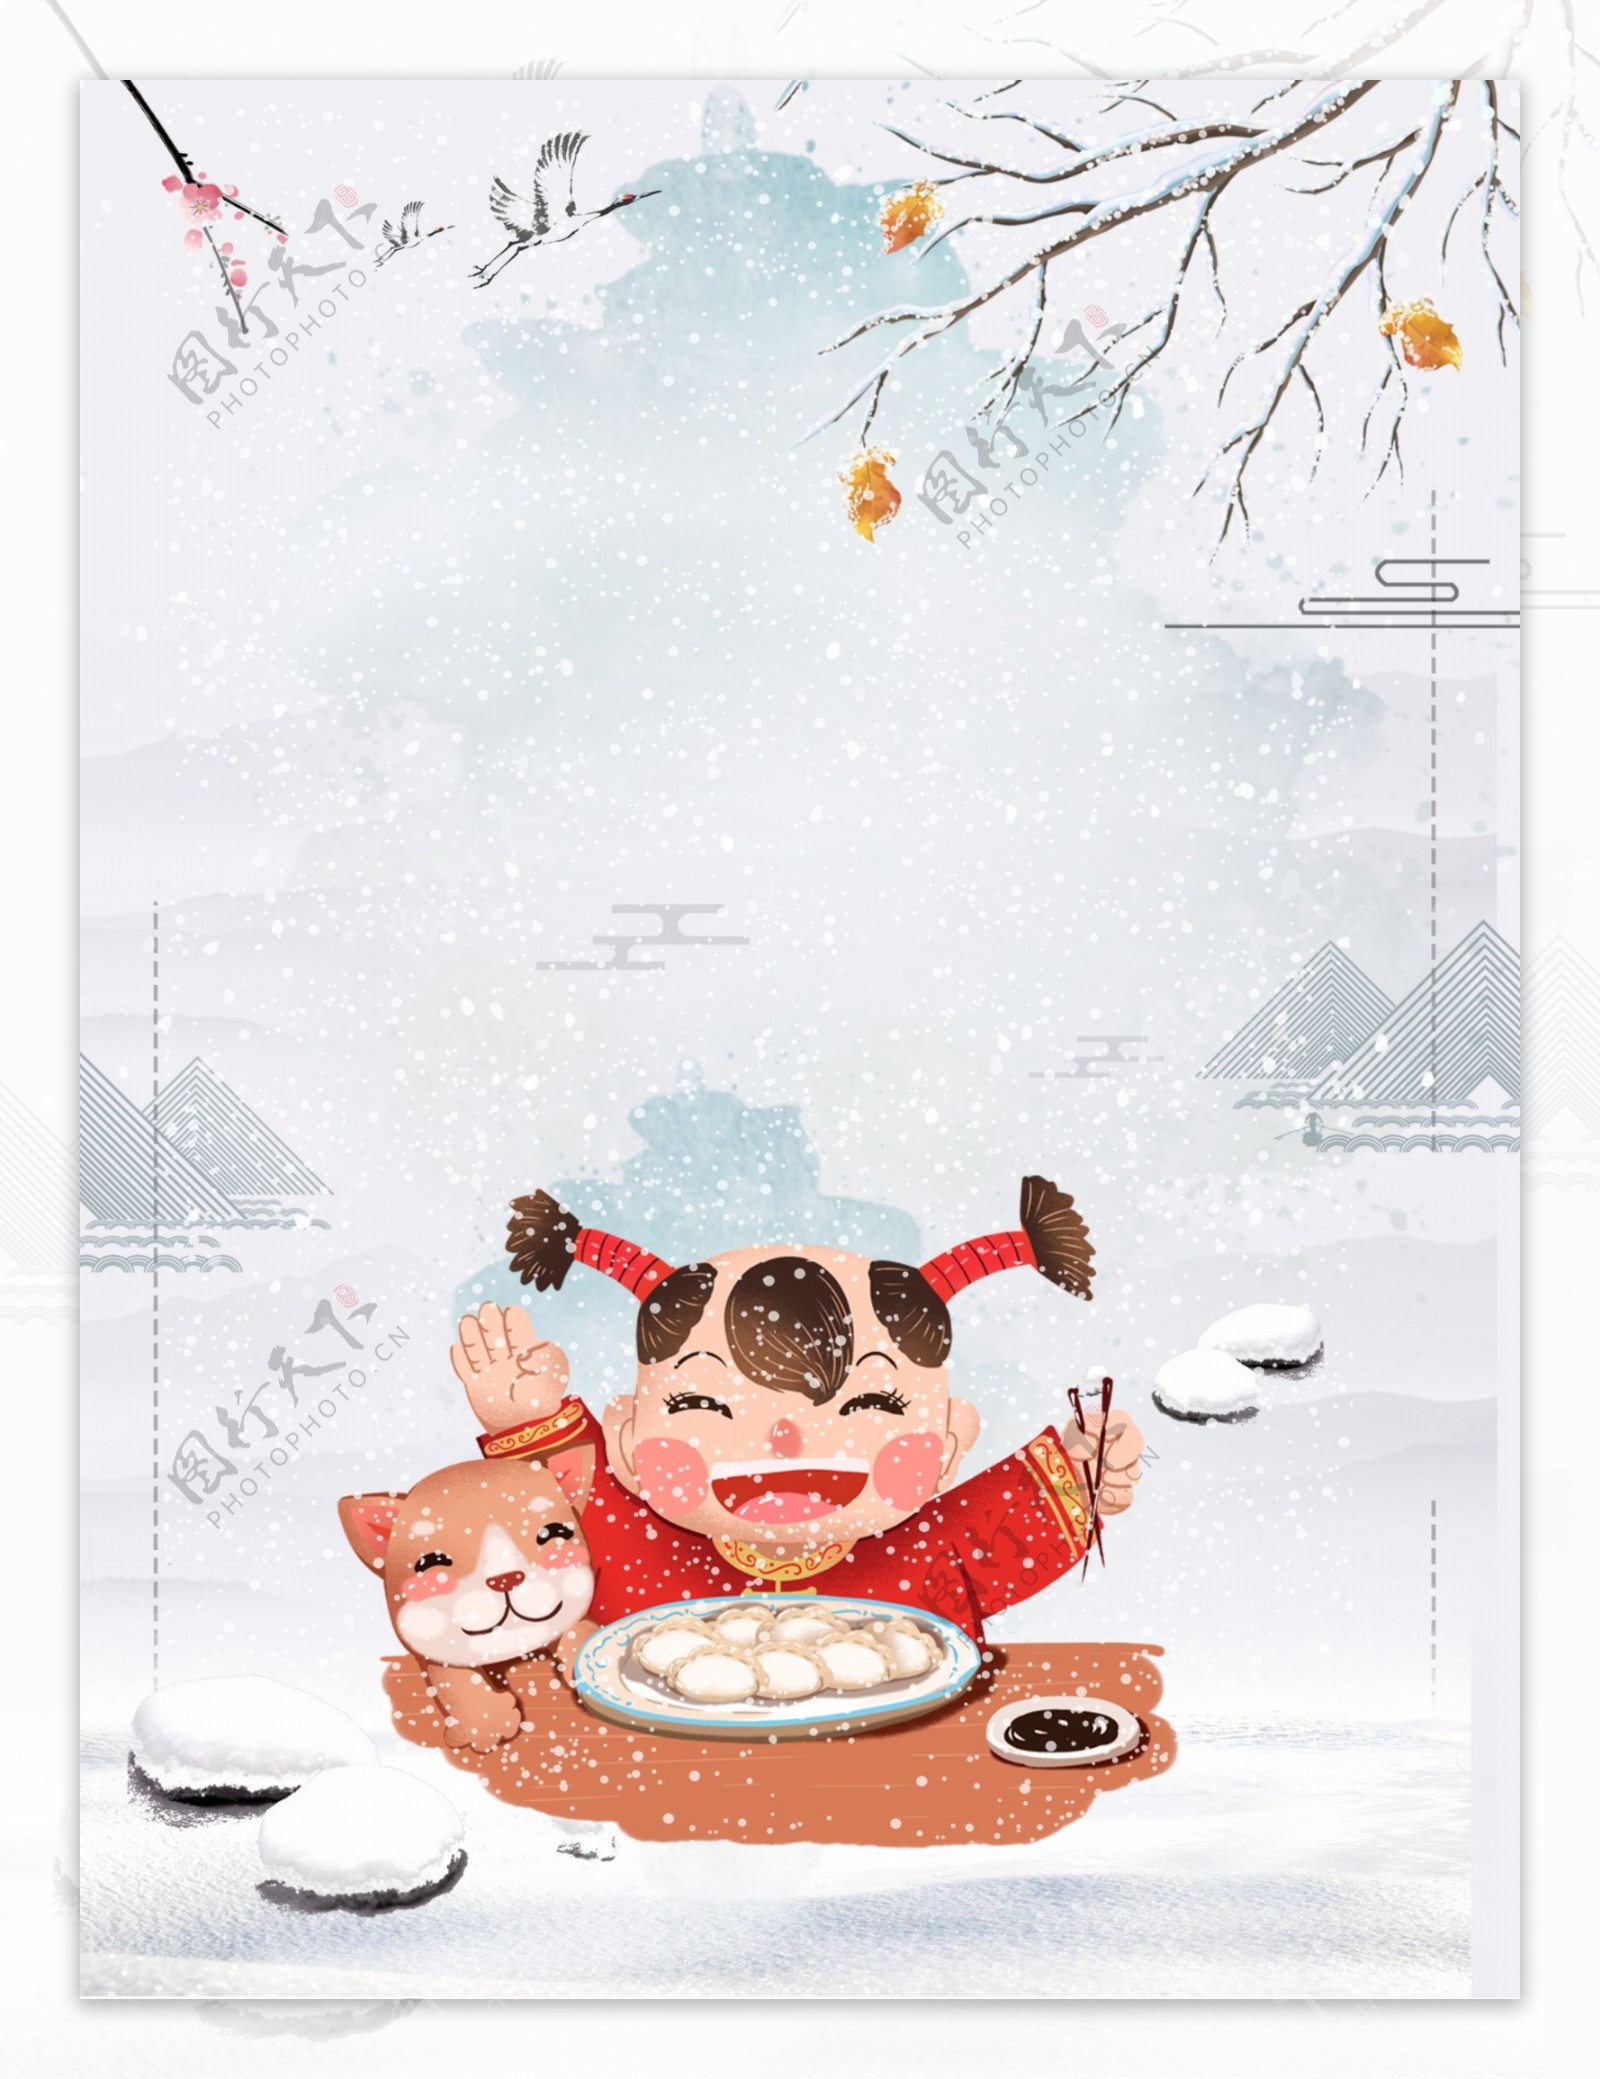 创意中国风卡通娃娃冬至背景素材